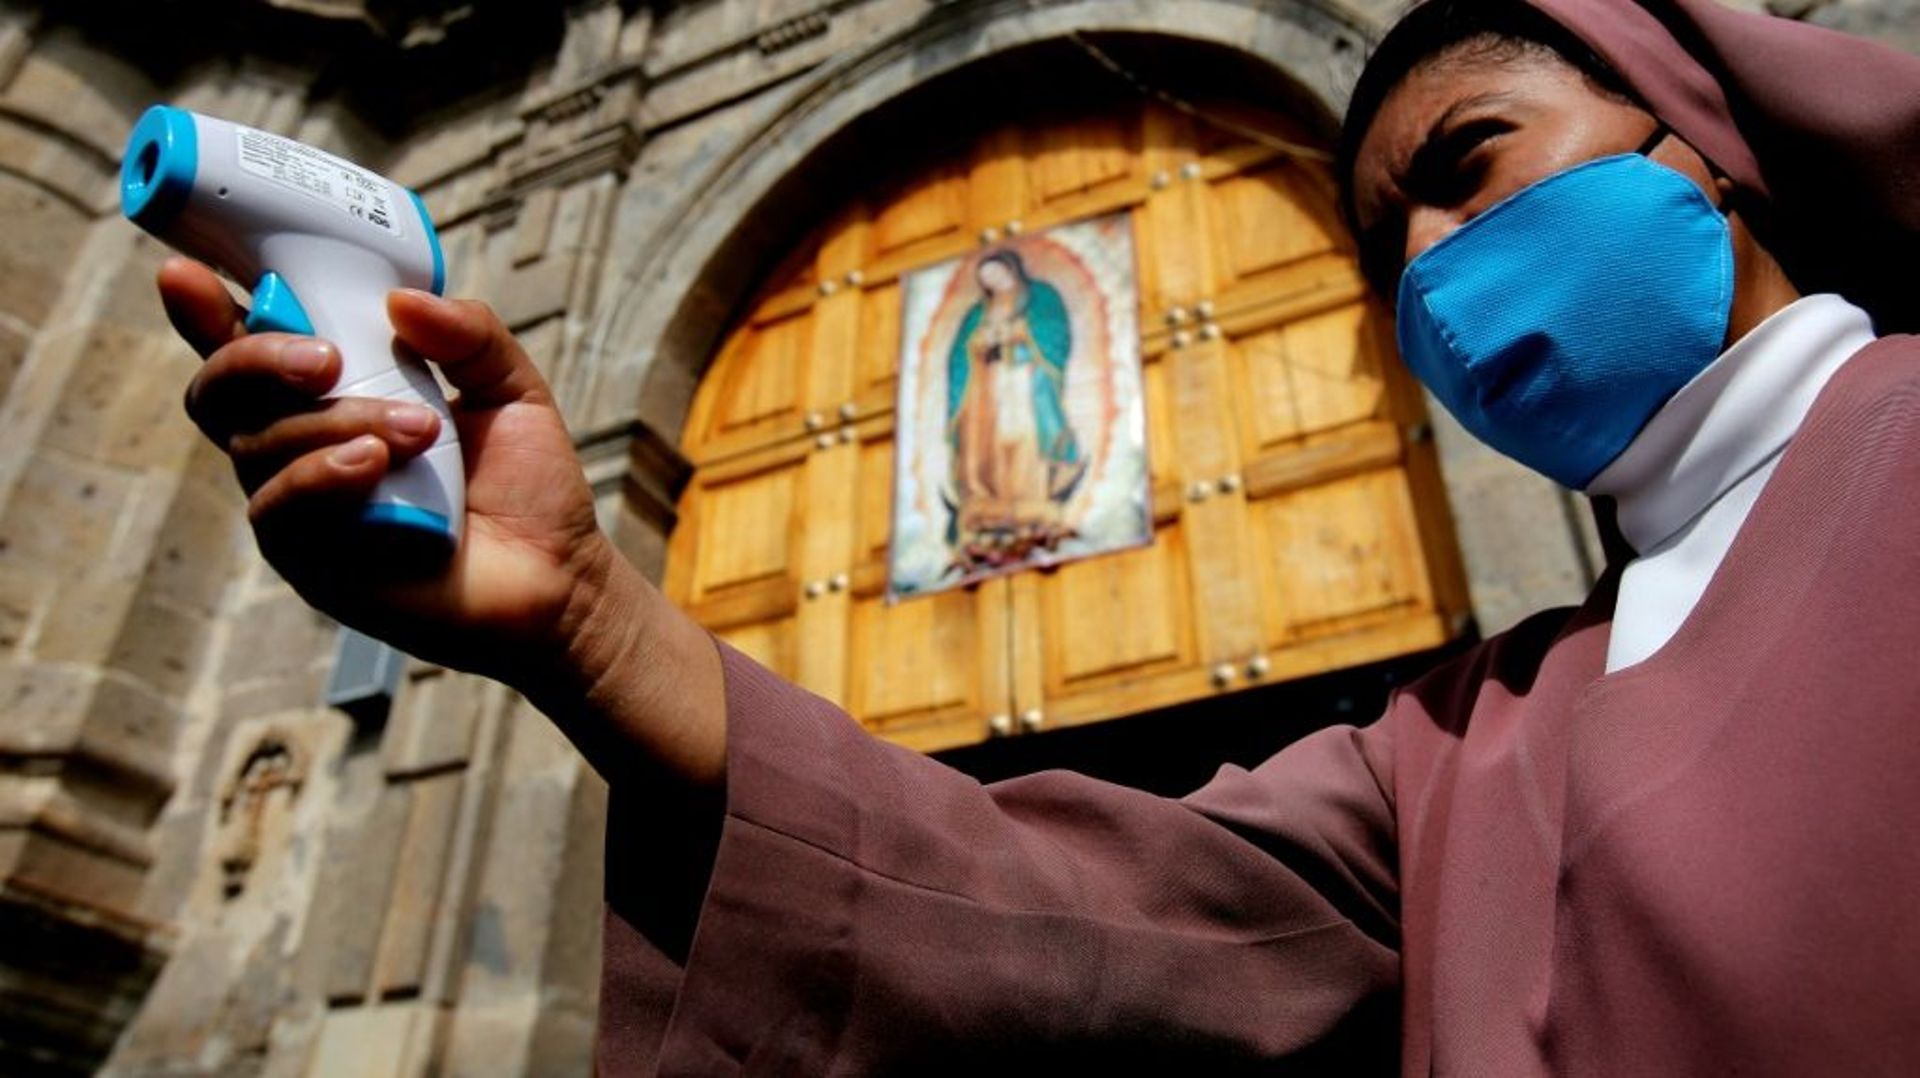 Une religieuse vérifie la température des fidèles, lors de la procession à Guadalajara, le 12 décembre 2020